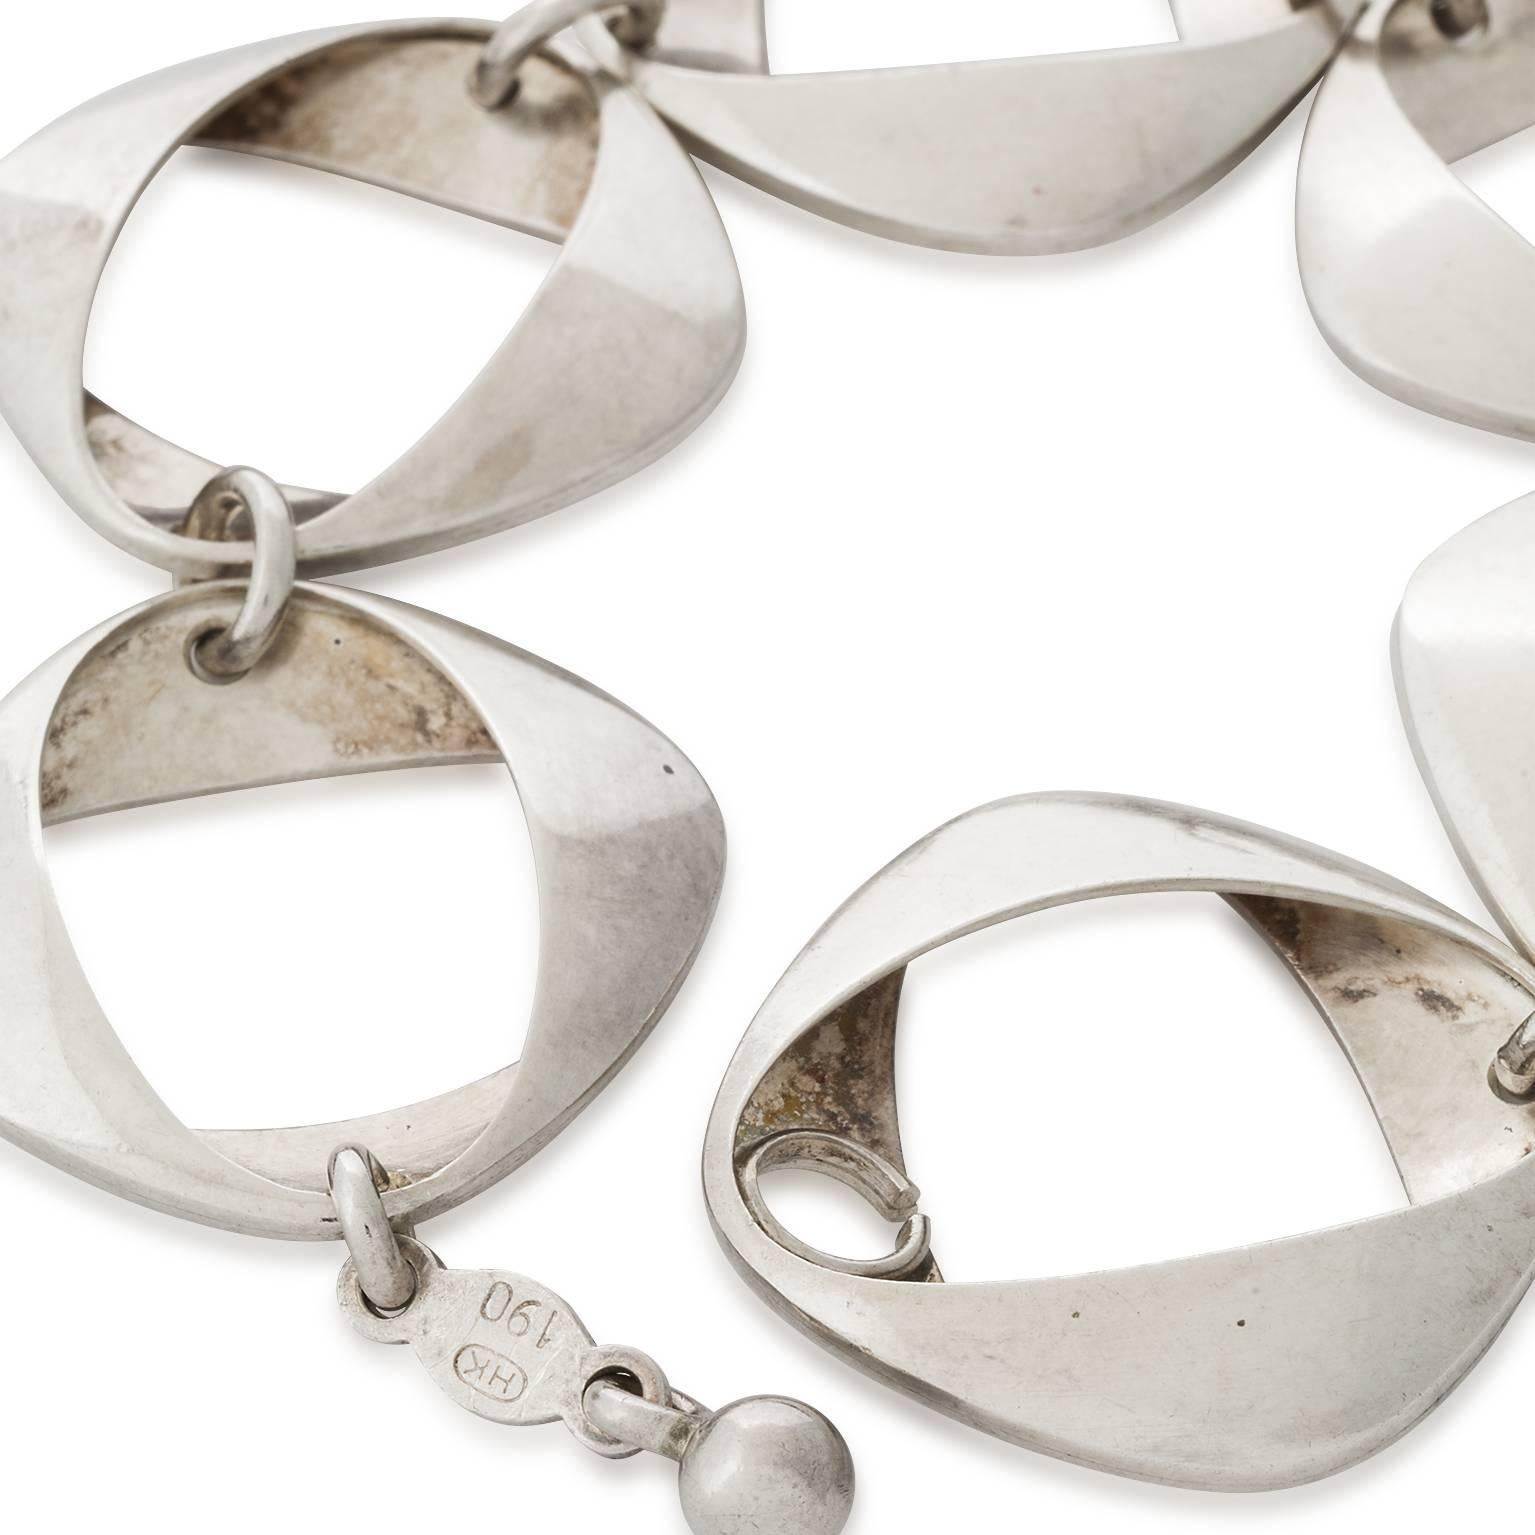 Henning Koppel designed Sterling silver link bracelet made in his signature oval ribbon  design for the Georg Jensen Design Studio.